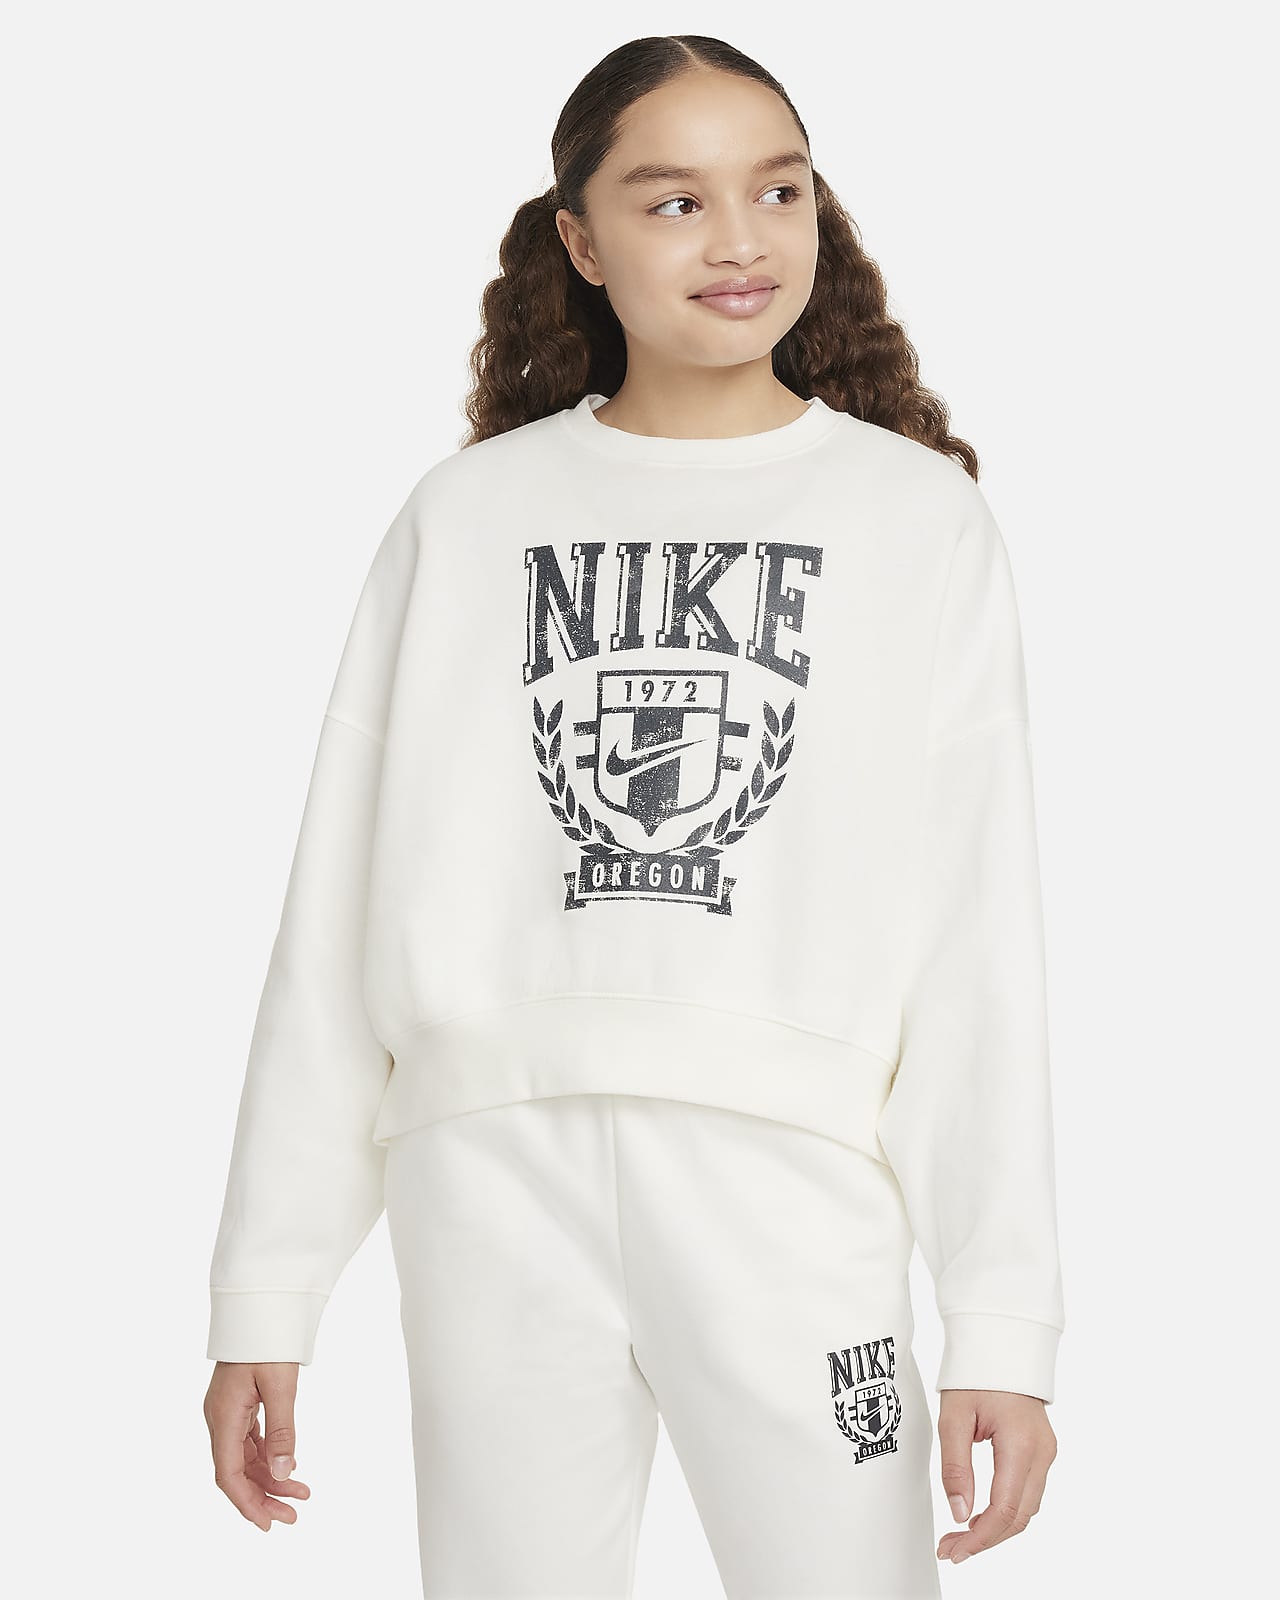 Volná flísová mikina Nike Sportswear s kulatým výstřihem pro větší děti (dívky)